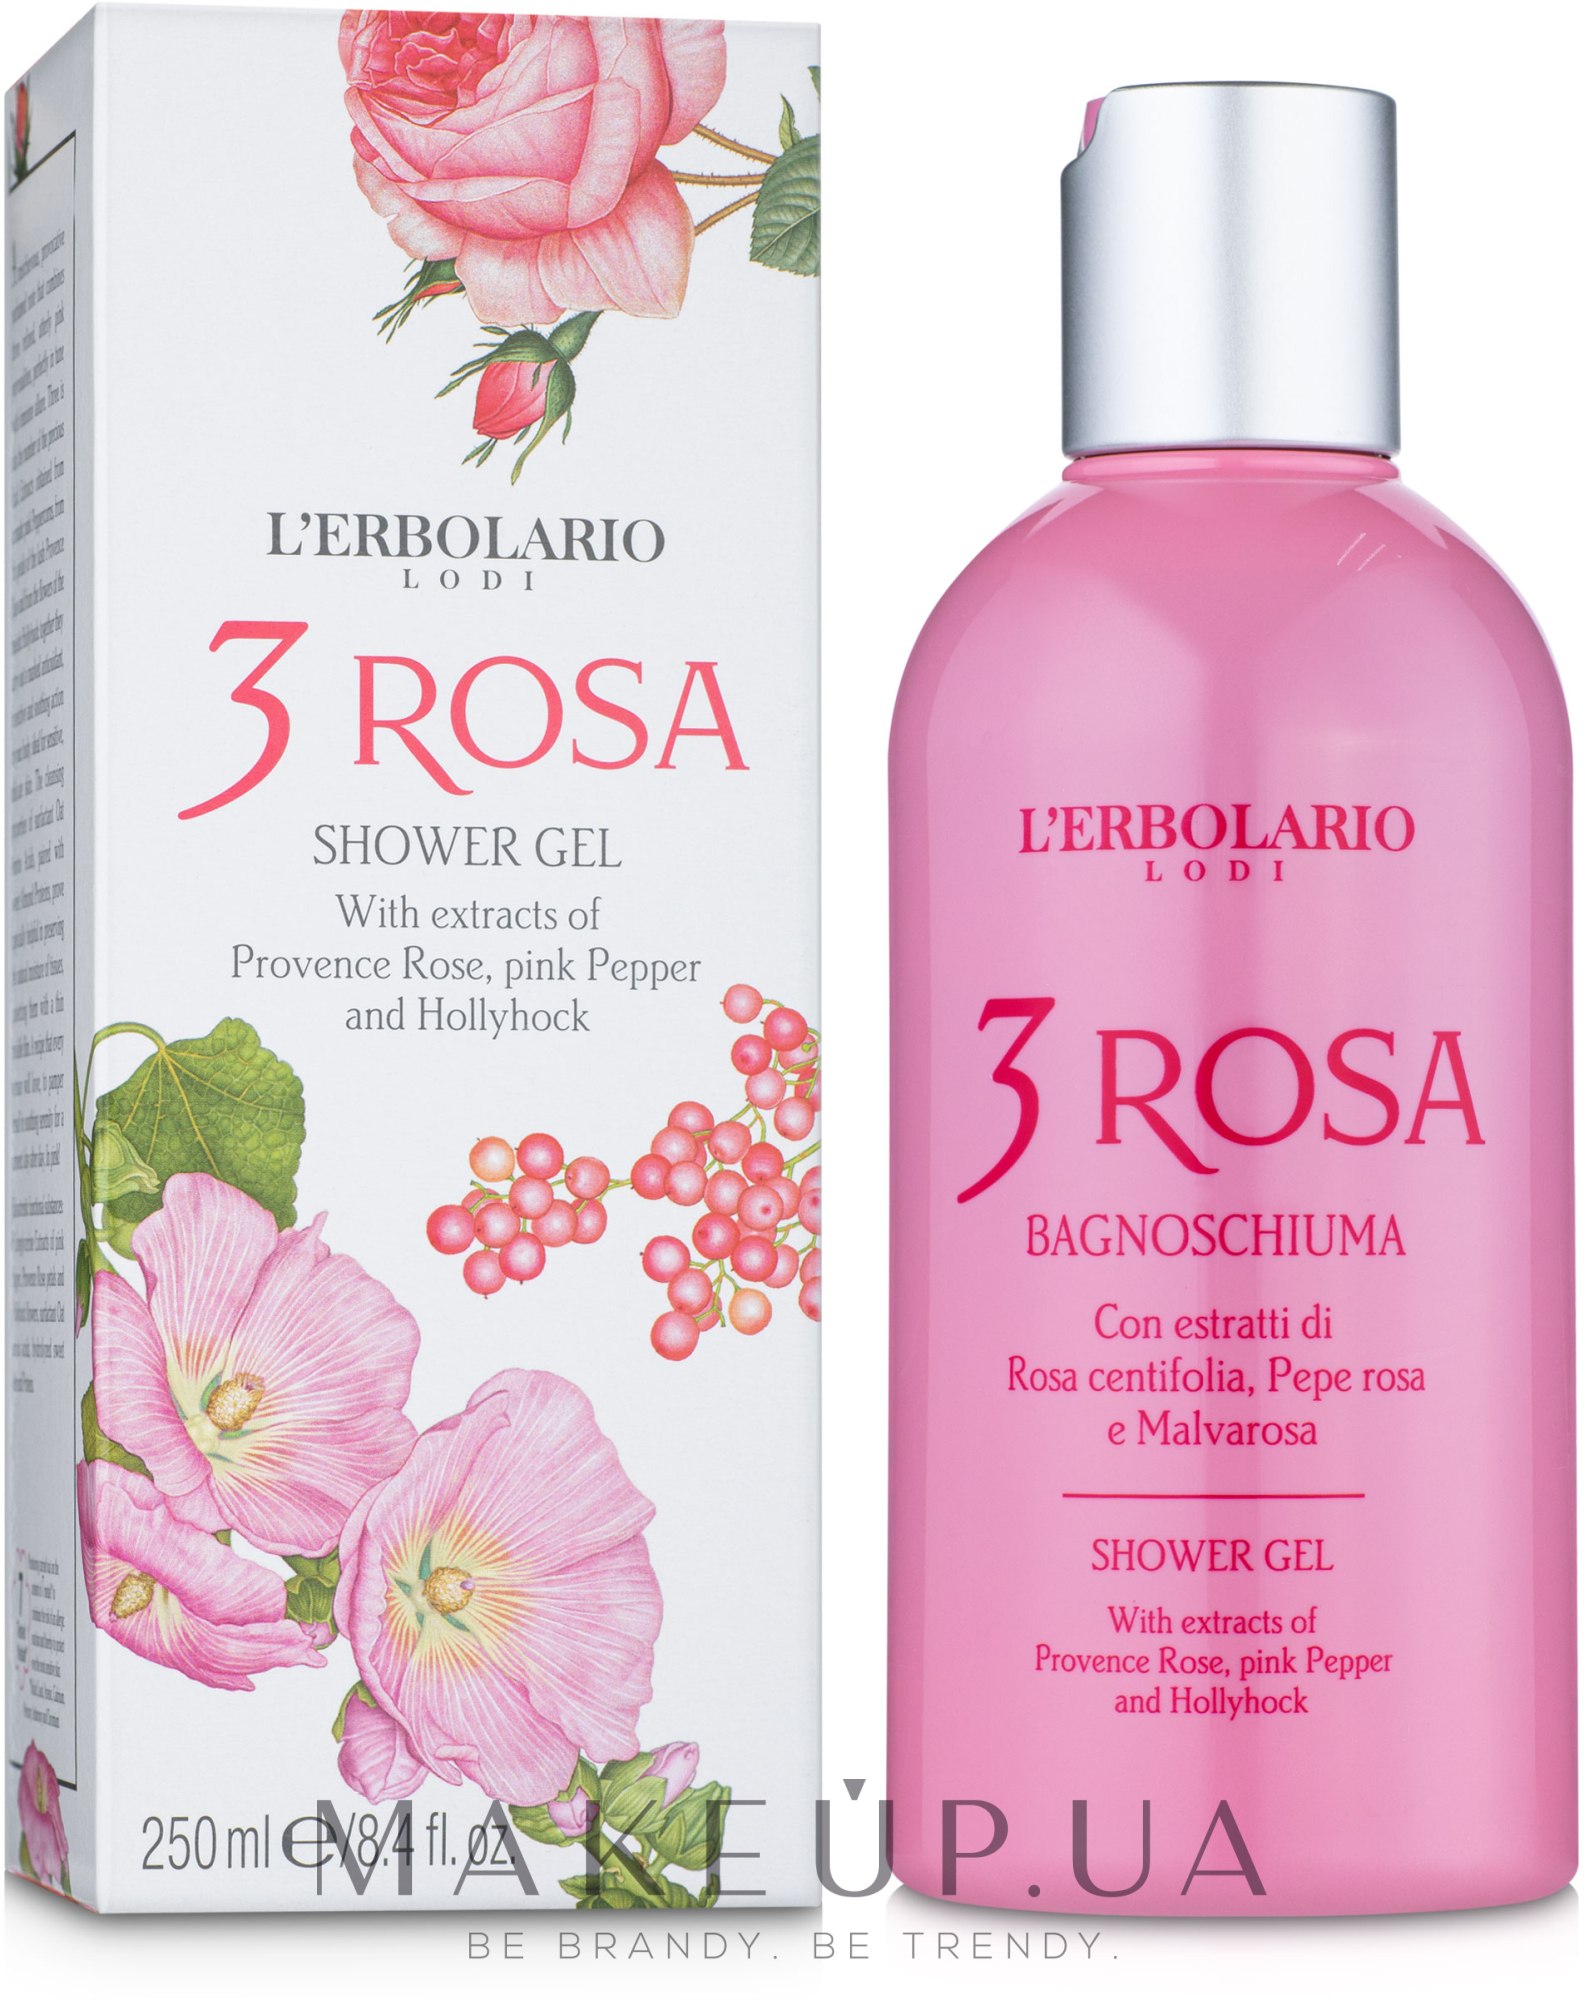 Піна для ванни - гель для душу - L'Erbolario 3 Rosa Bagnoschiuma  — фото 250ml